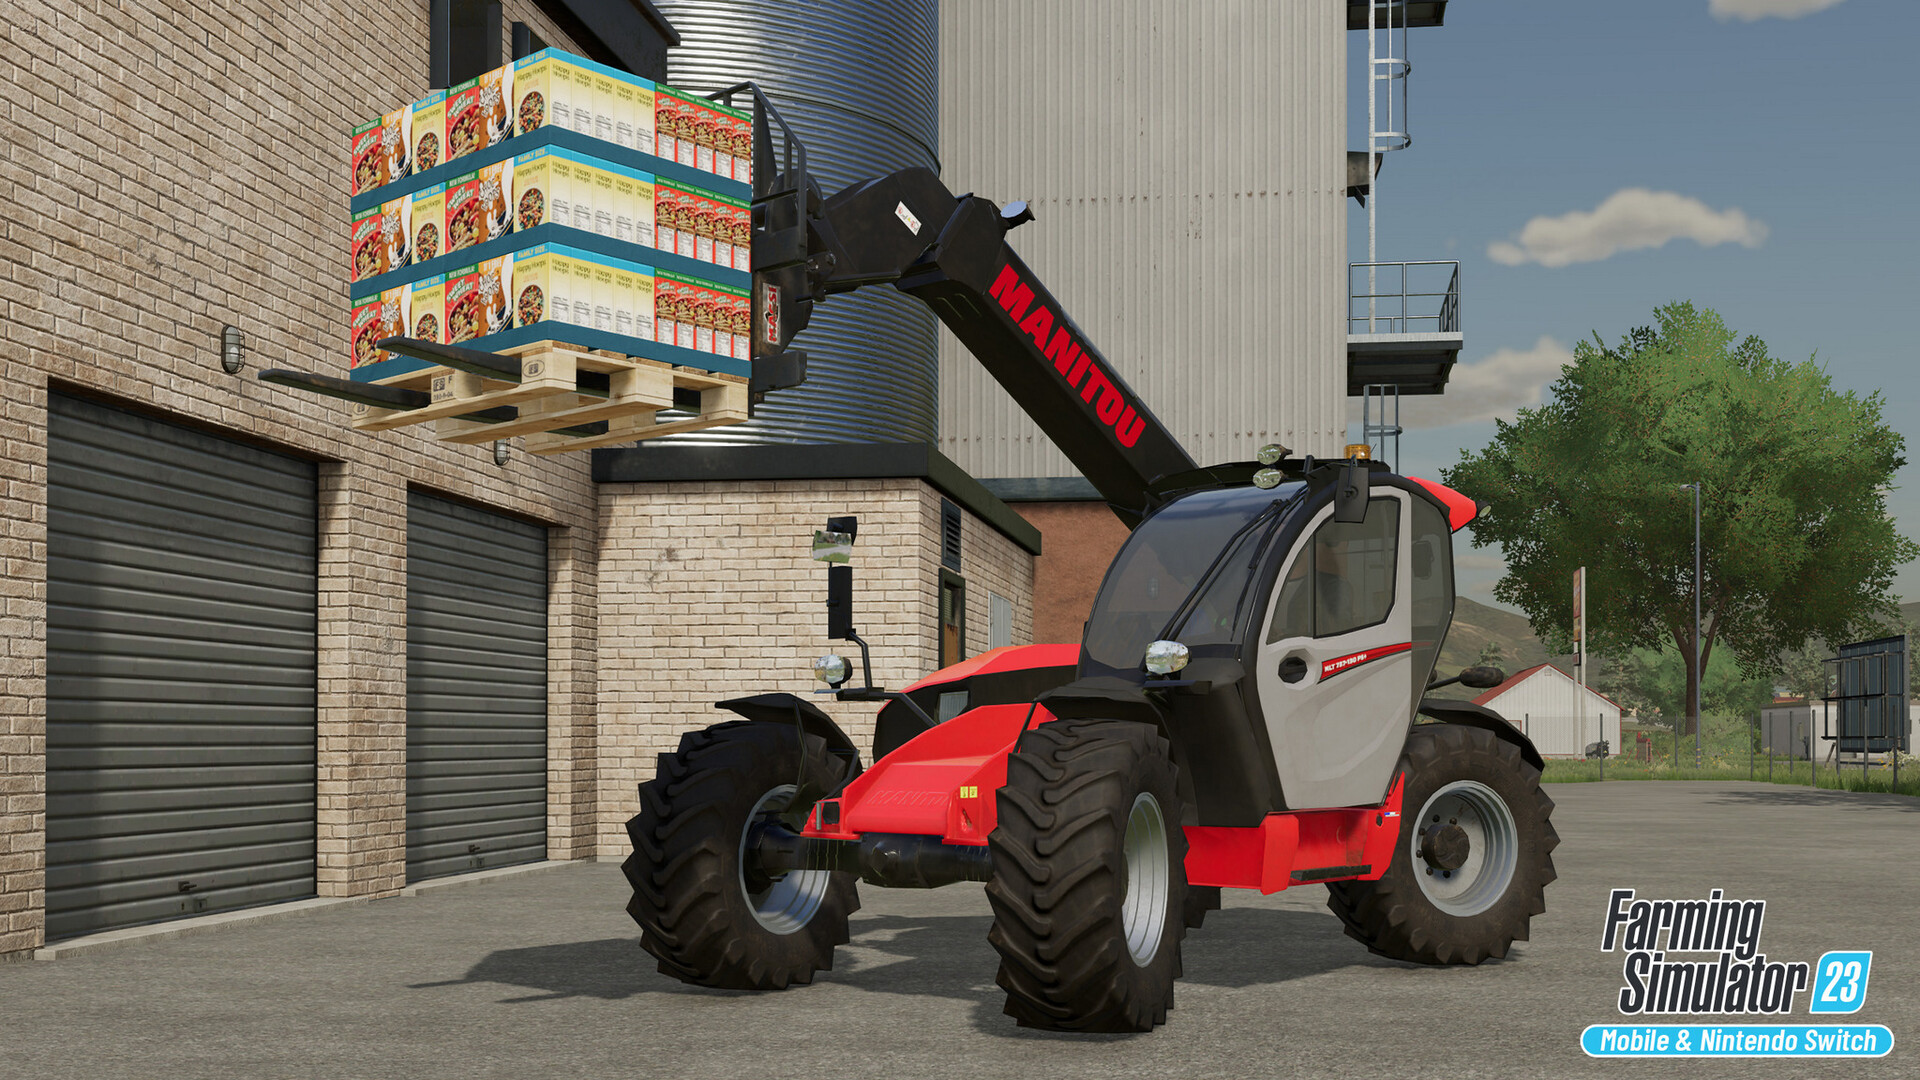 Landwirtschafts-Simulator 23: Über 130 Landwirtschafts-Maschinen